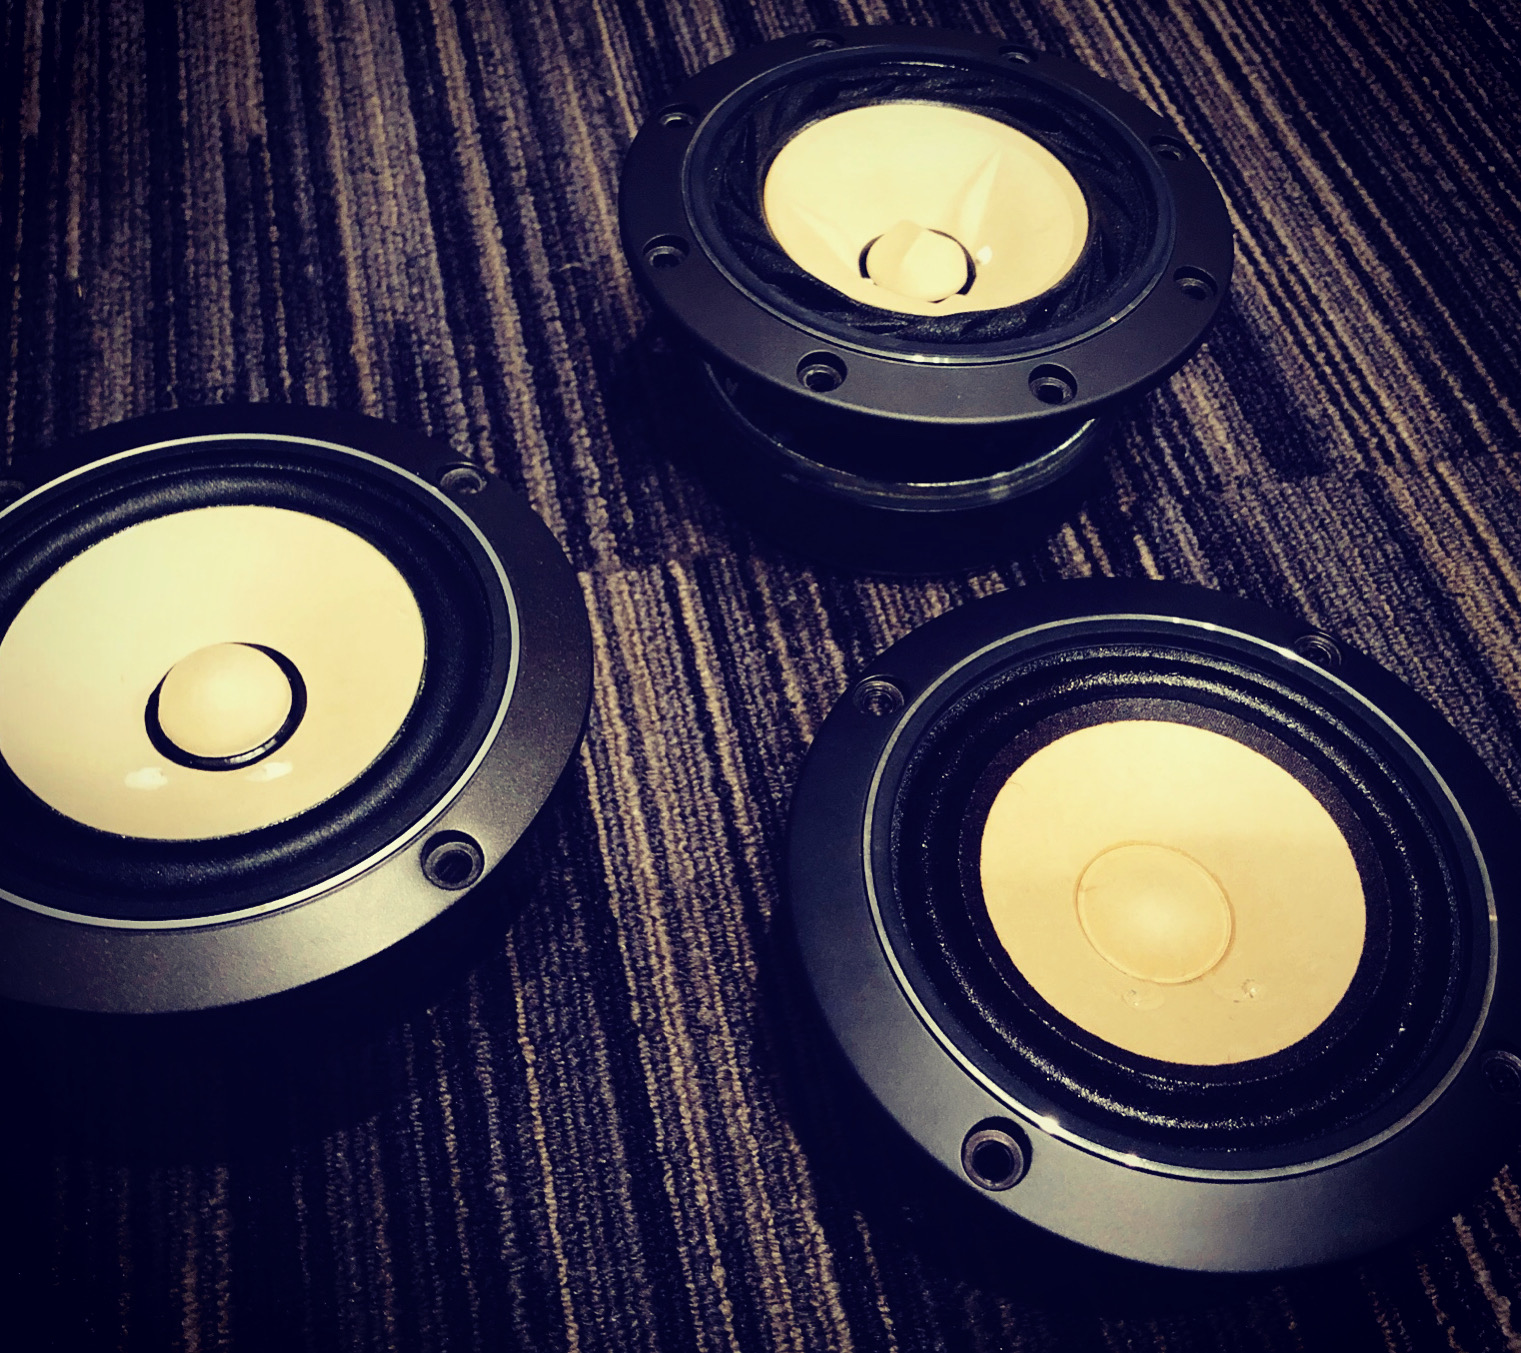 オーディオ機器 スピーカー Fostex FE108 シリーズを比較試聴する | Speaker Factory | Xperience